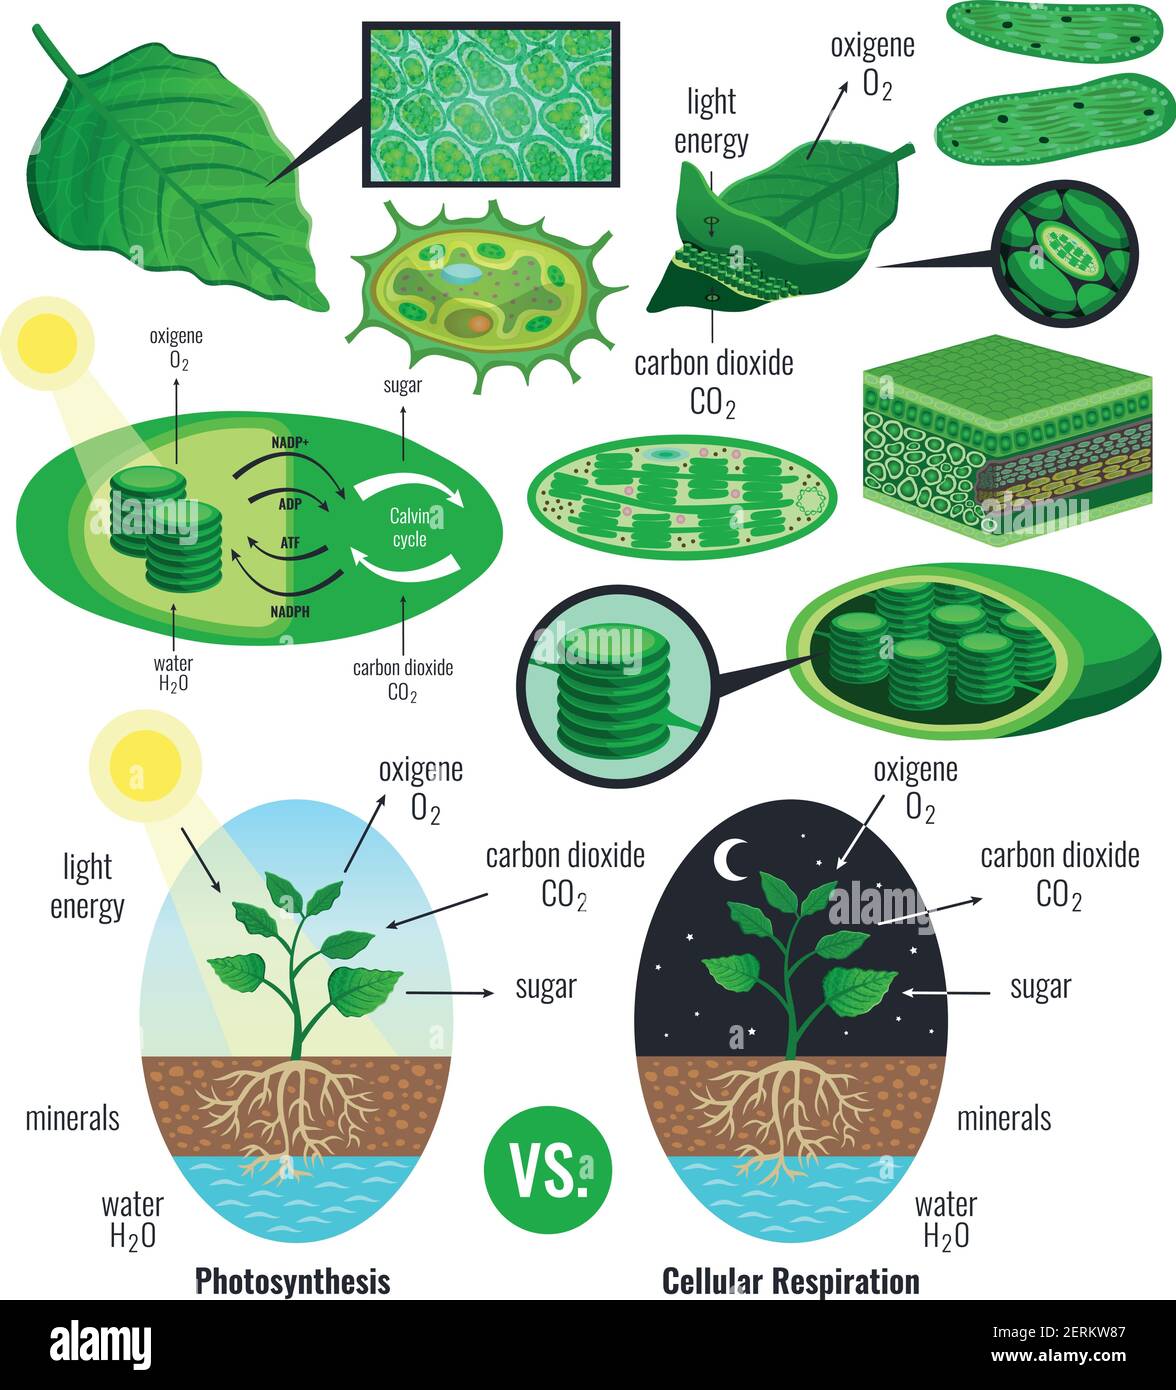 Biologische Photosynthese Infografik Elemente mit Lichtenergieumwandlung  calvin-Zyklus Schema Pflanzen zelluläre Atmung bunte Vektor illustrati  Stock-Vektorgrafik - Alamy